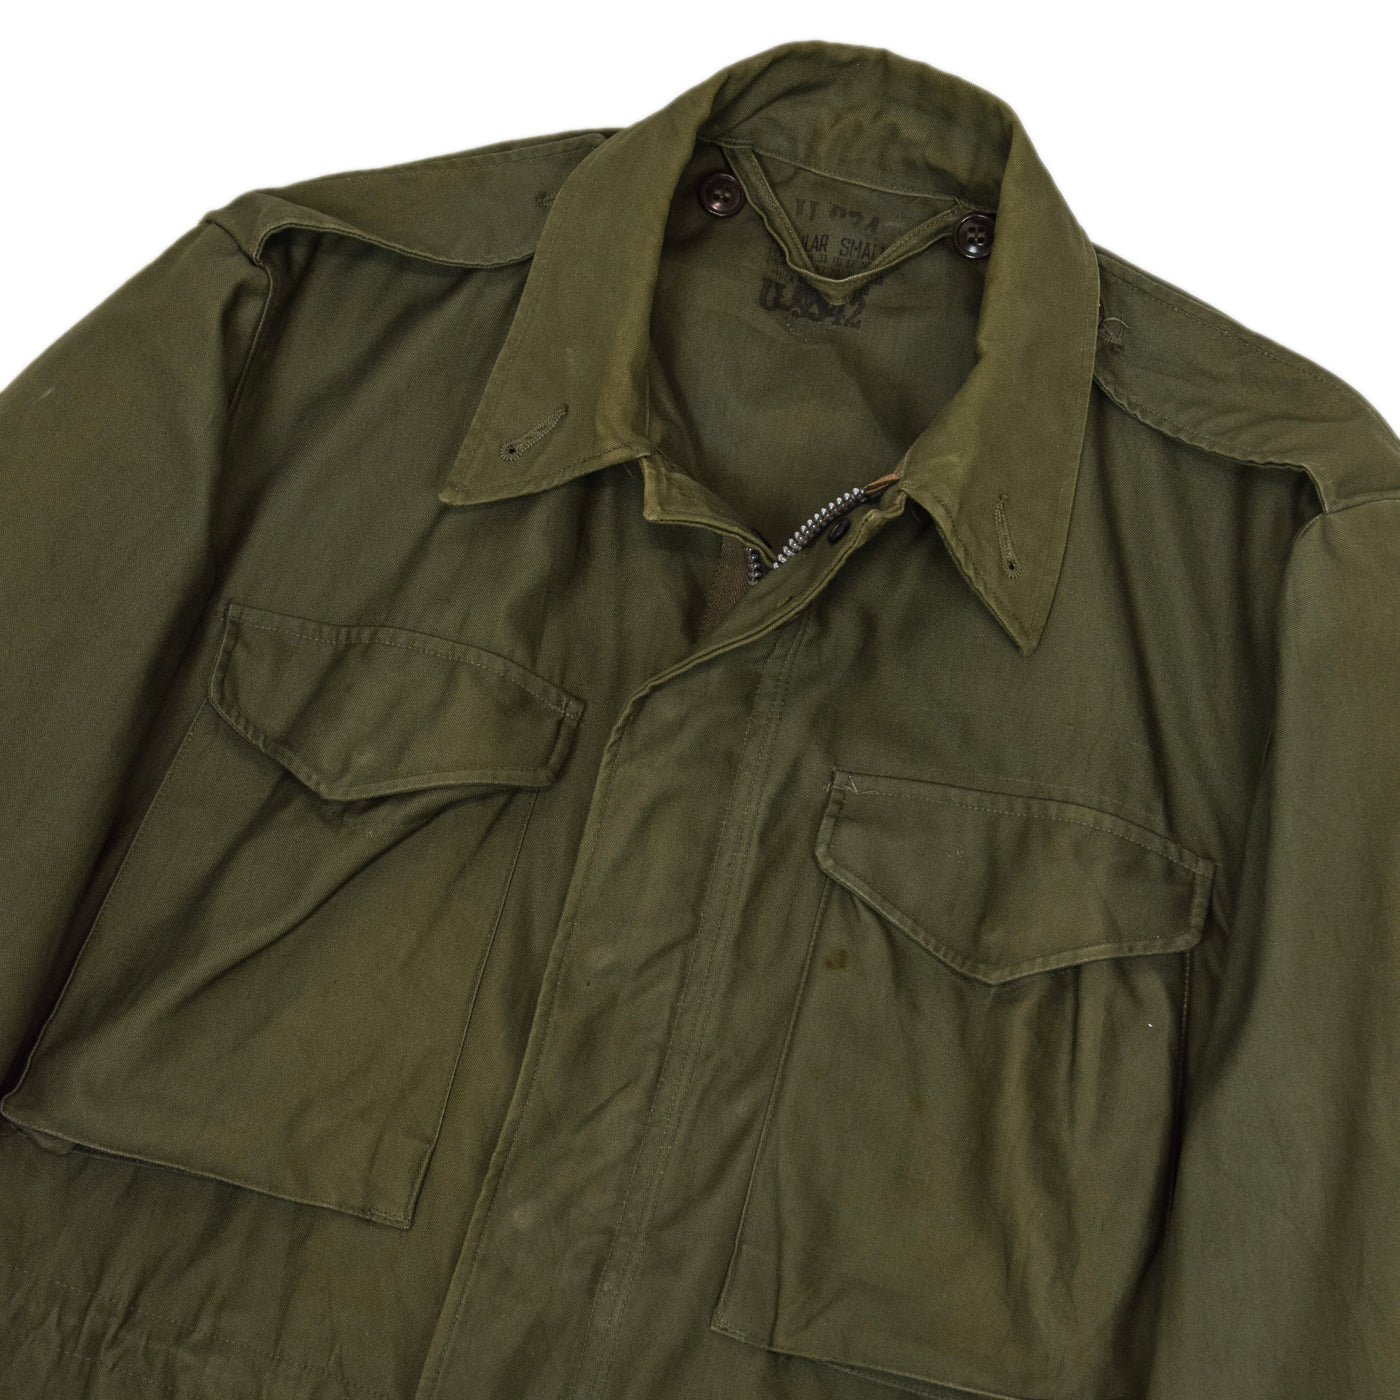 Vintage 50s M-1951 Korean War US Army Field Jacket OG-107 Olive Green S chest